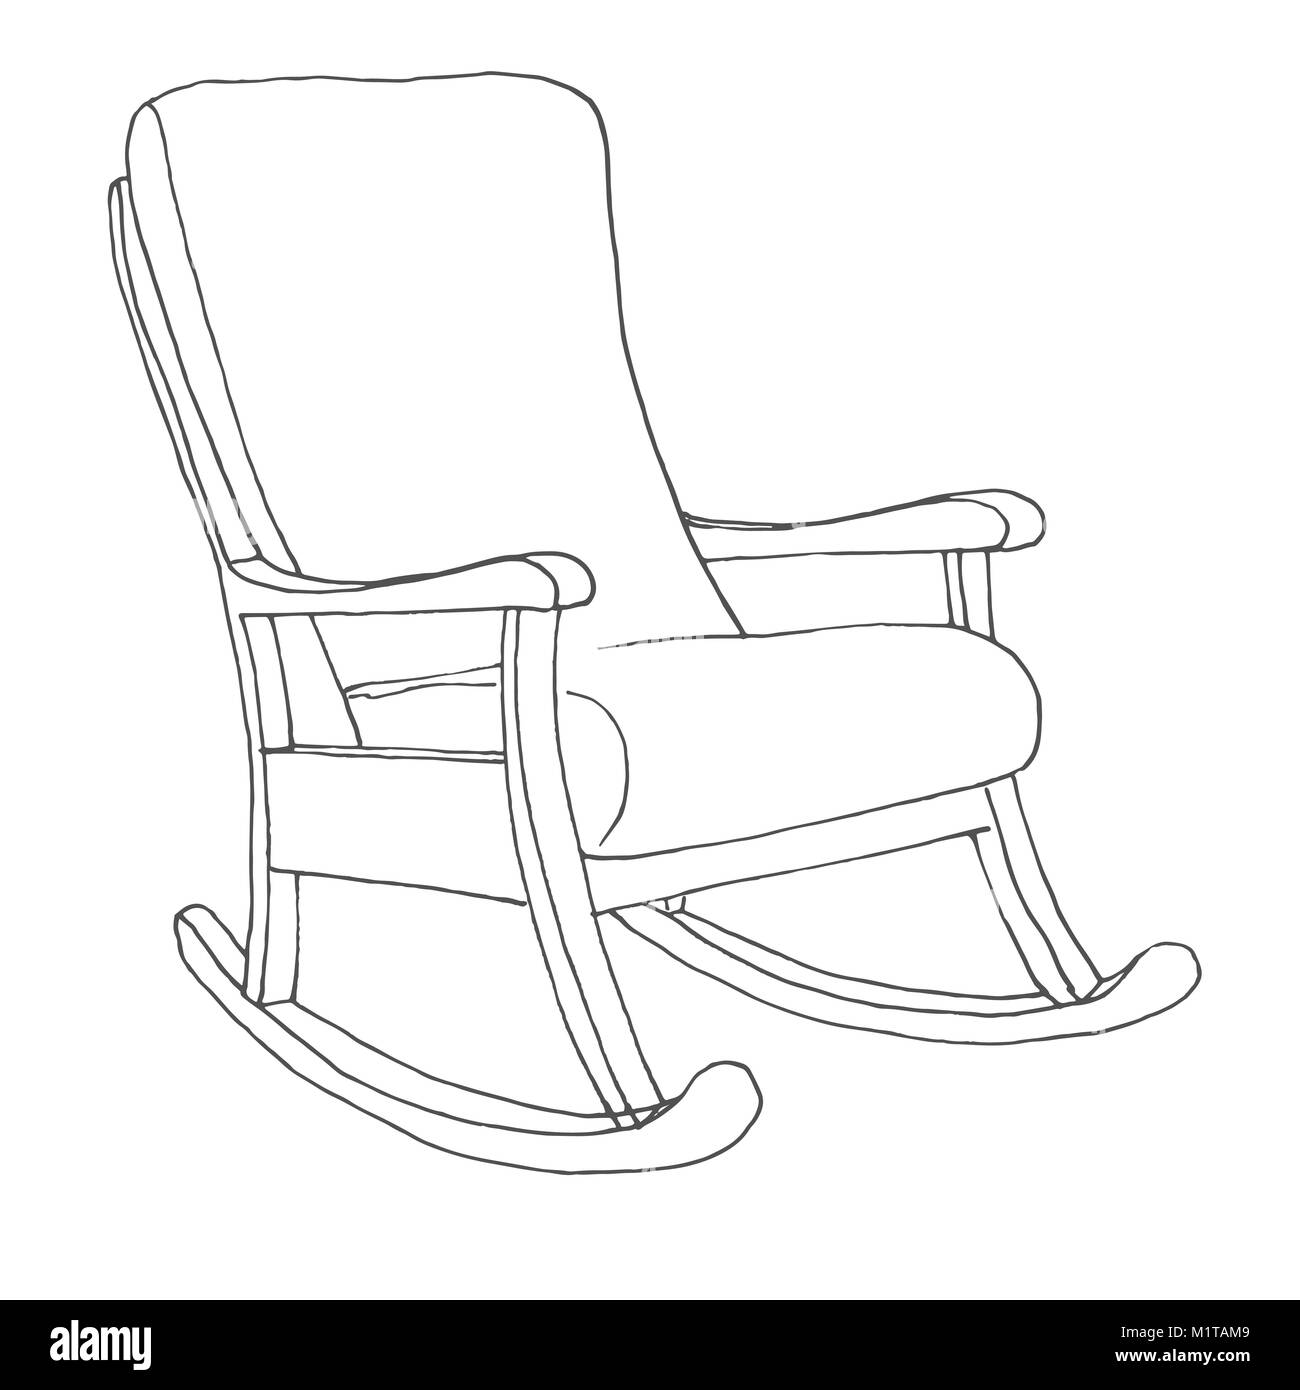 Rocking chair isolé sur fond blanc. Croquis d'une chaise confortable.  Vector illustration Image Vectorielle Stock - Alamy